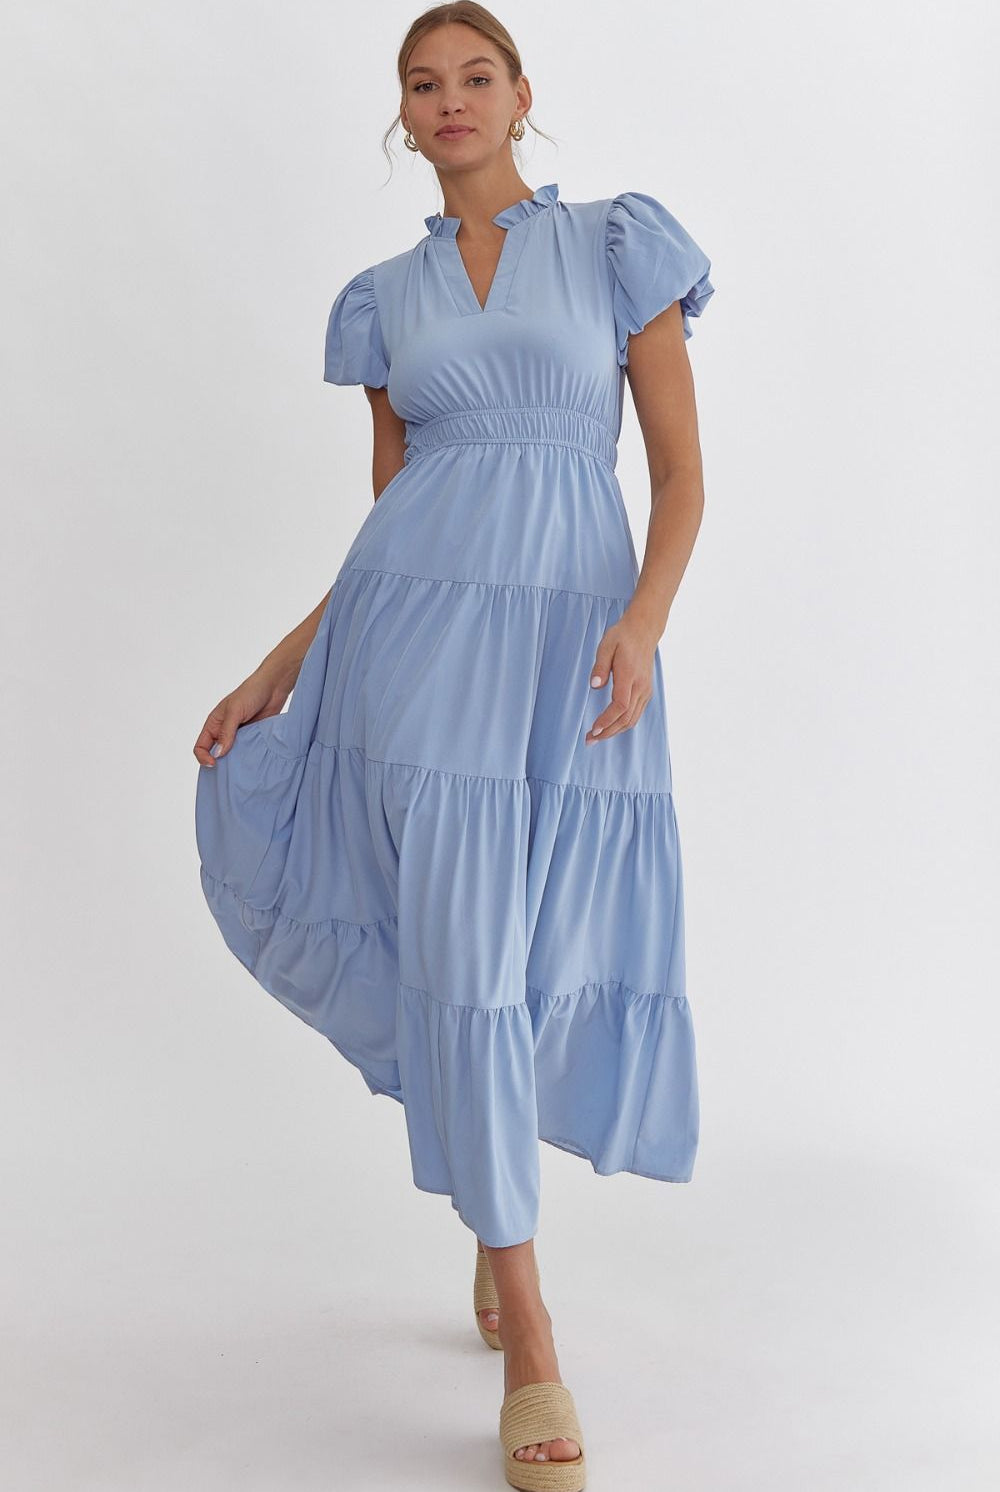 Bubble Sleeve Tiered Dress PLUS-Midi Dresses-Podos Boutique, a Women's Fashion Boutique Located in Calera, AL